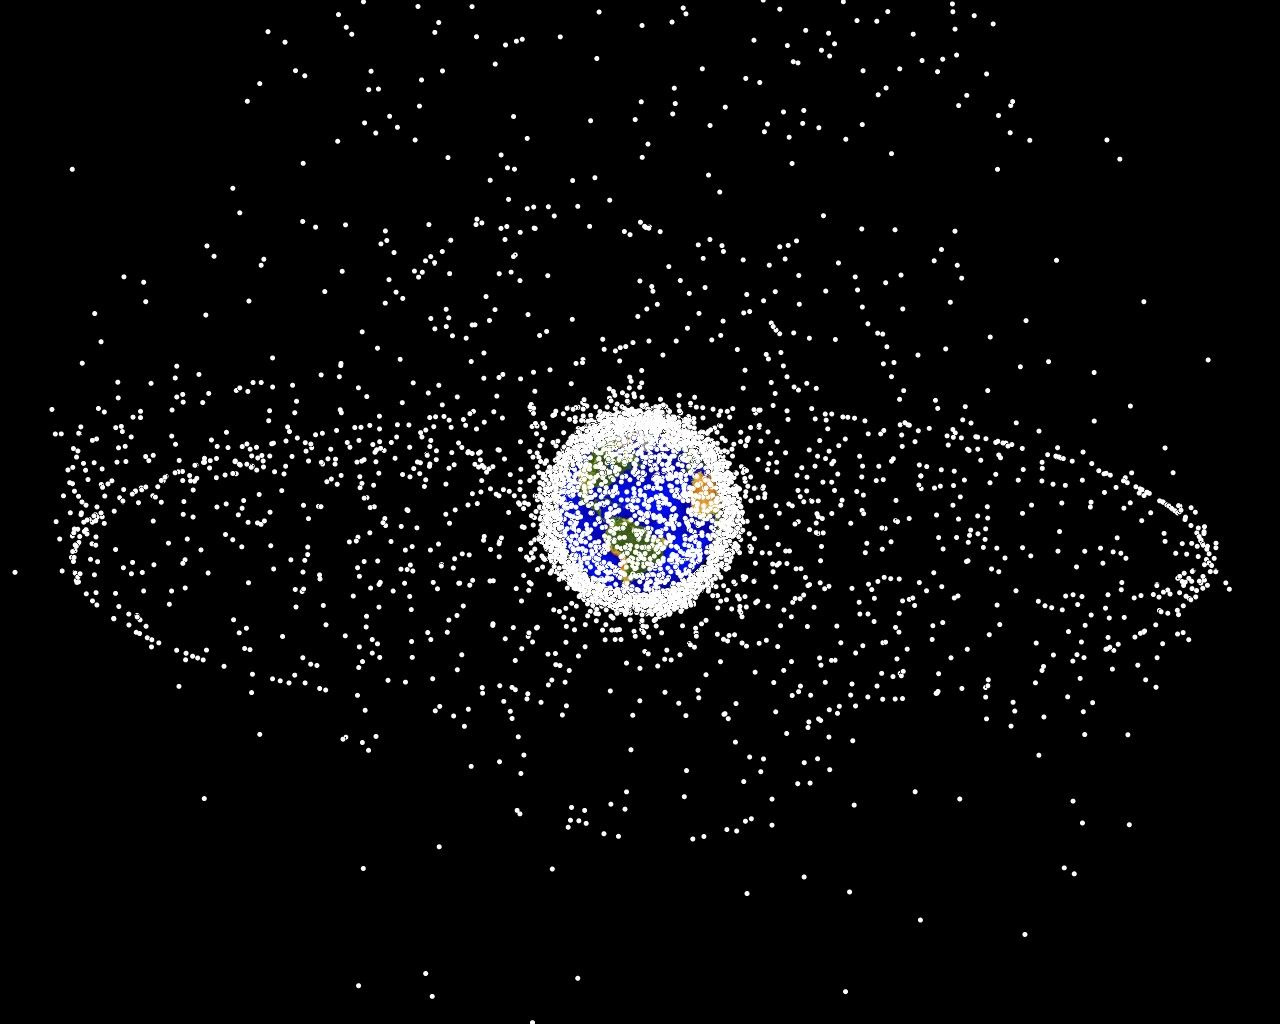 Компьютерная модель распределения космических объектов в околоземном пространстве, согласно описанию NASA 95 % из них являются мусором. Фото: wikipedia.org/NASA